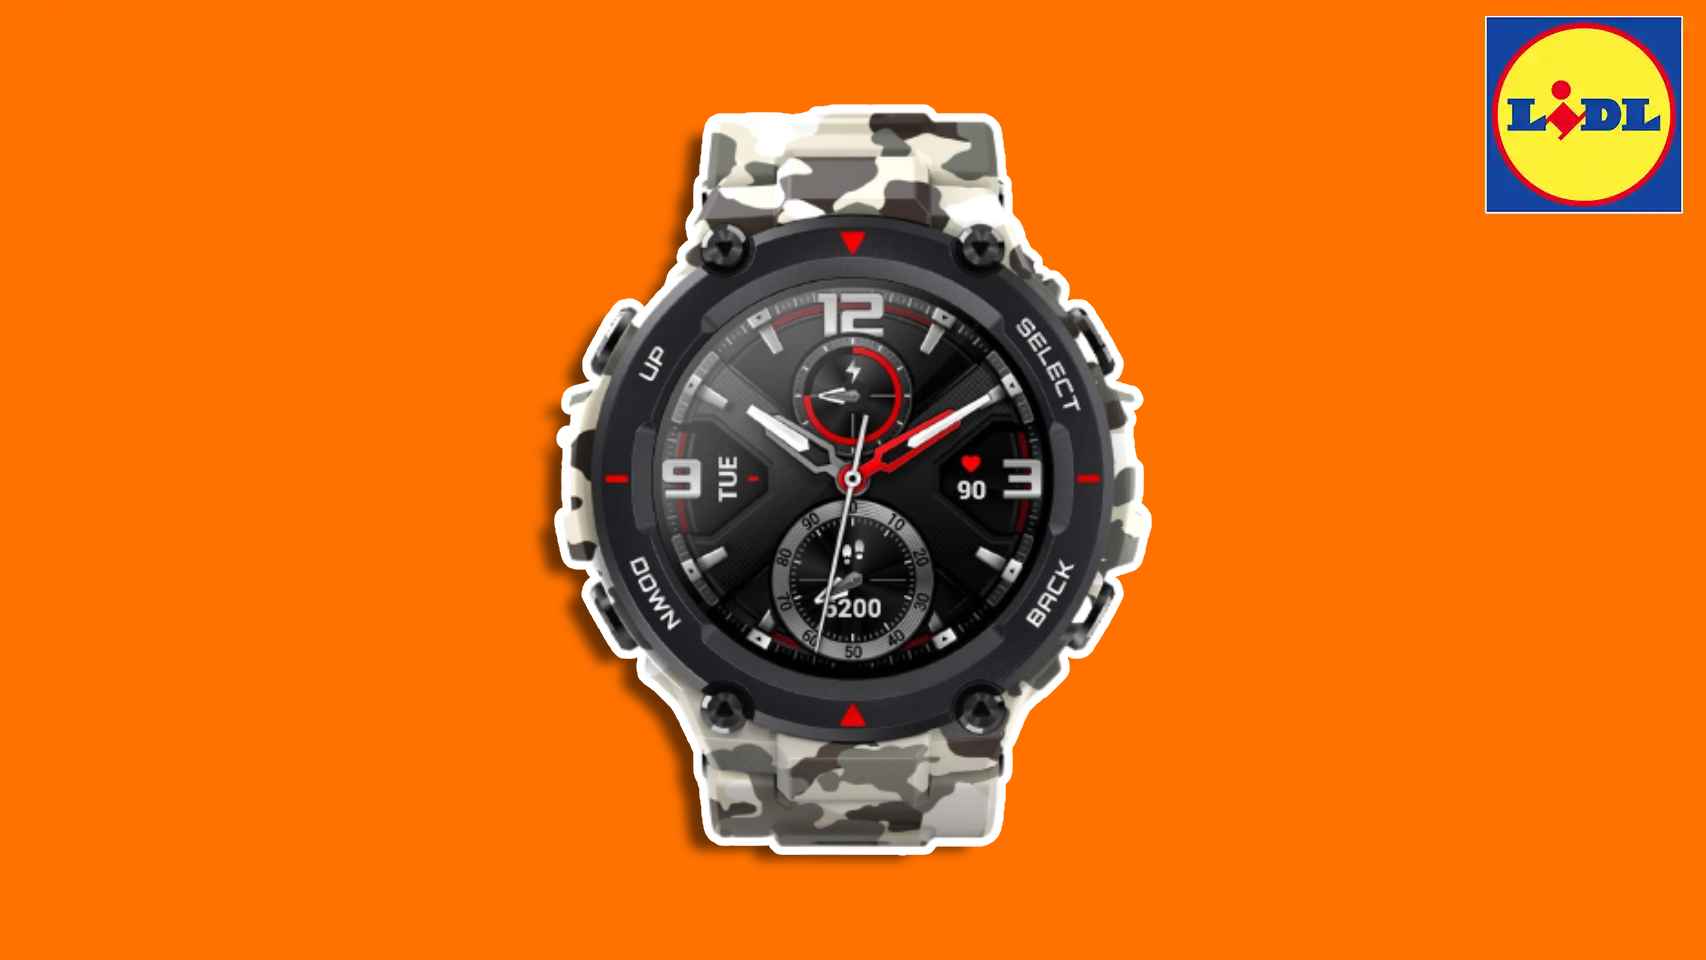 El Amazfit T-Rex es un smartwatch con 12 certificaciones de grado militar.